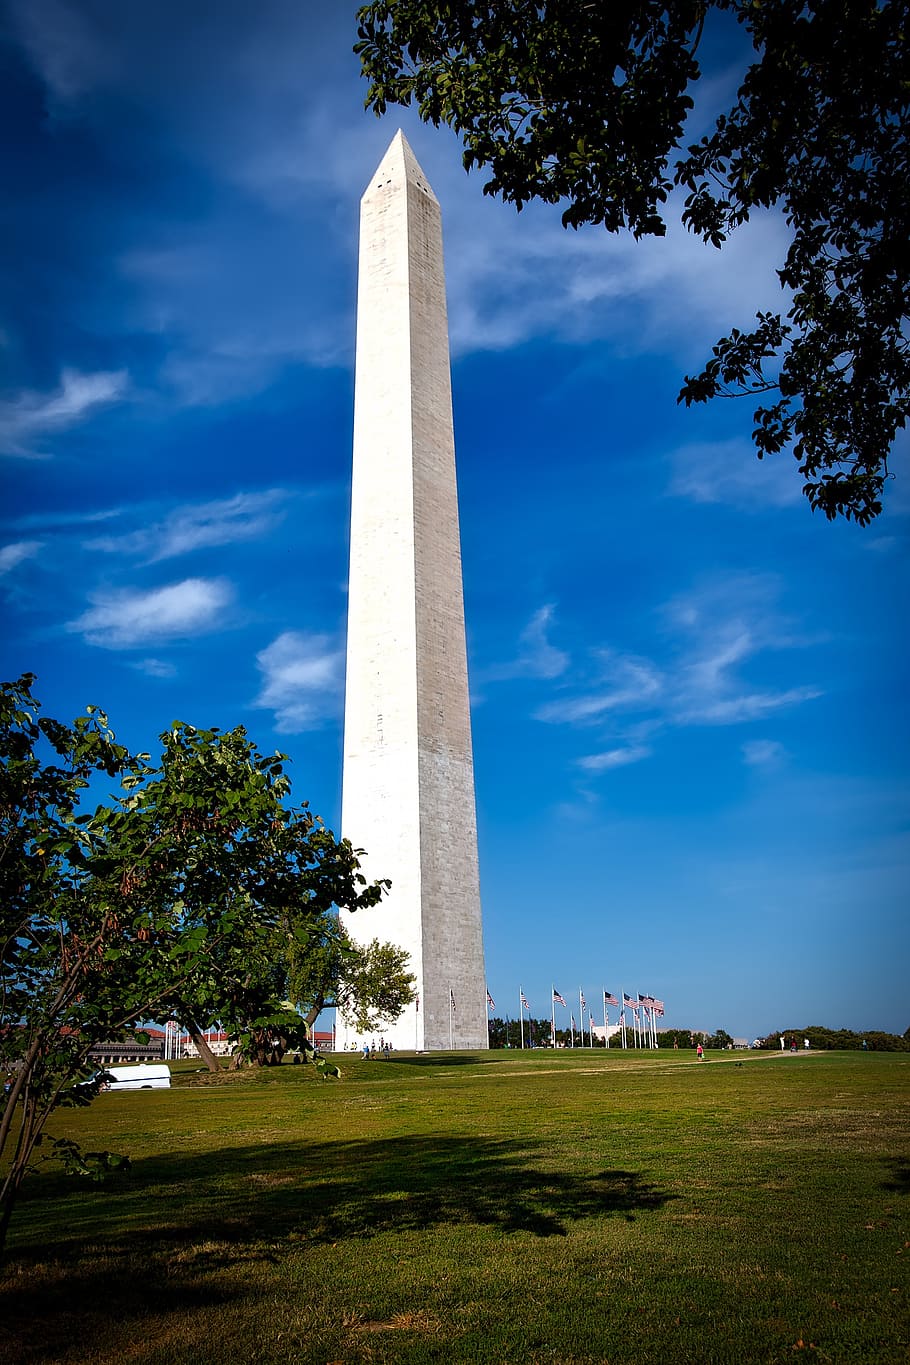 ワシントン記念碑, d.c。, ワシントンdc, c, 建築, アメリカ, 空, 雲, hdr, アトラクション